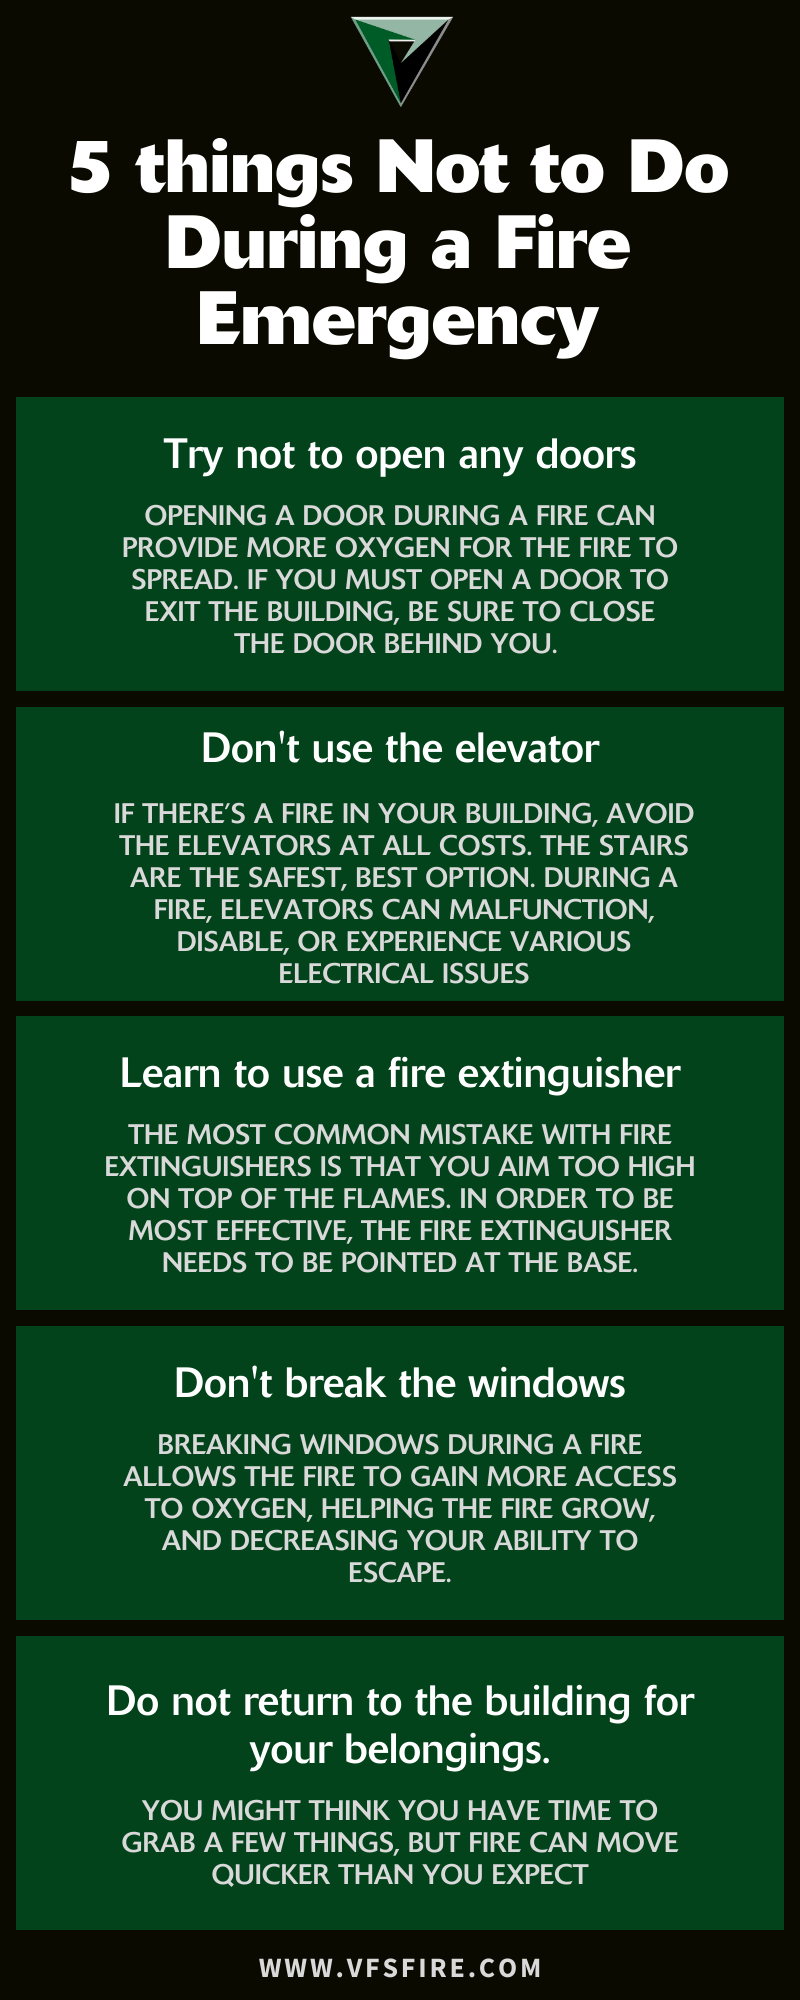 ¿Por qué no deberías abrir una ventana en un incendio?